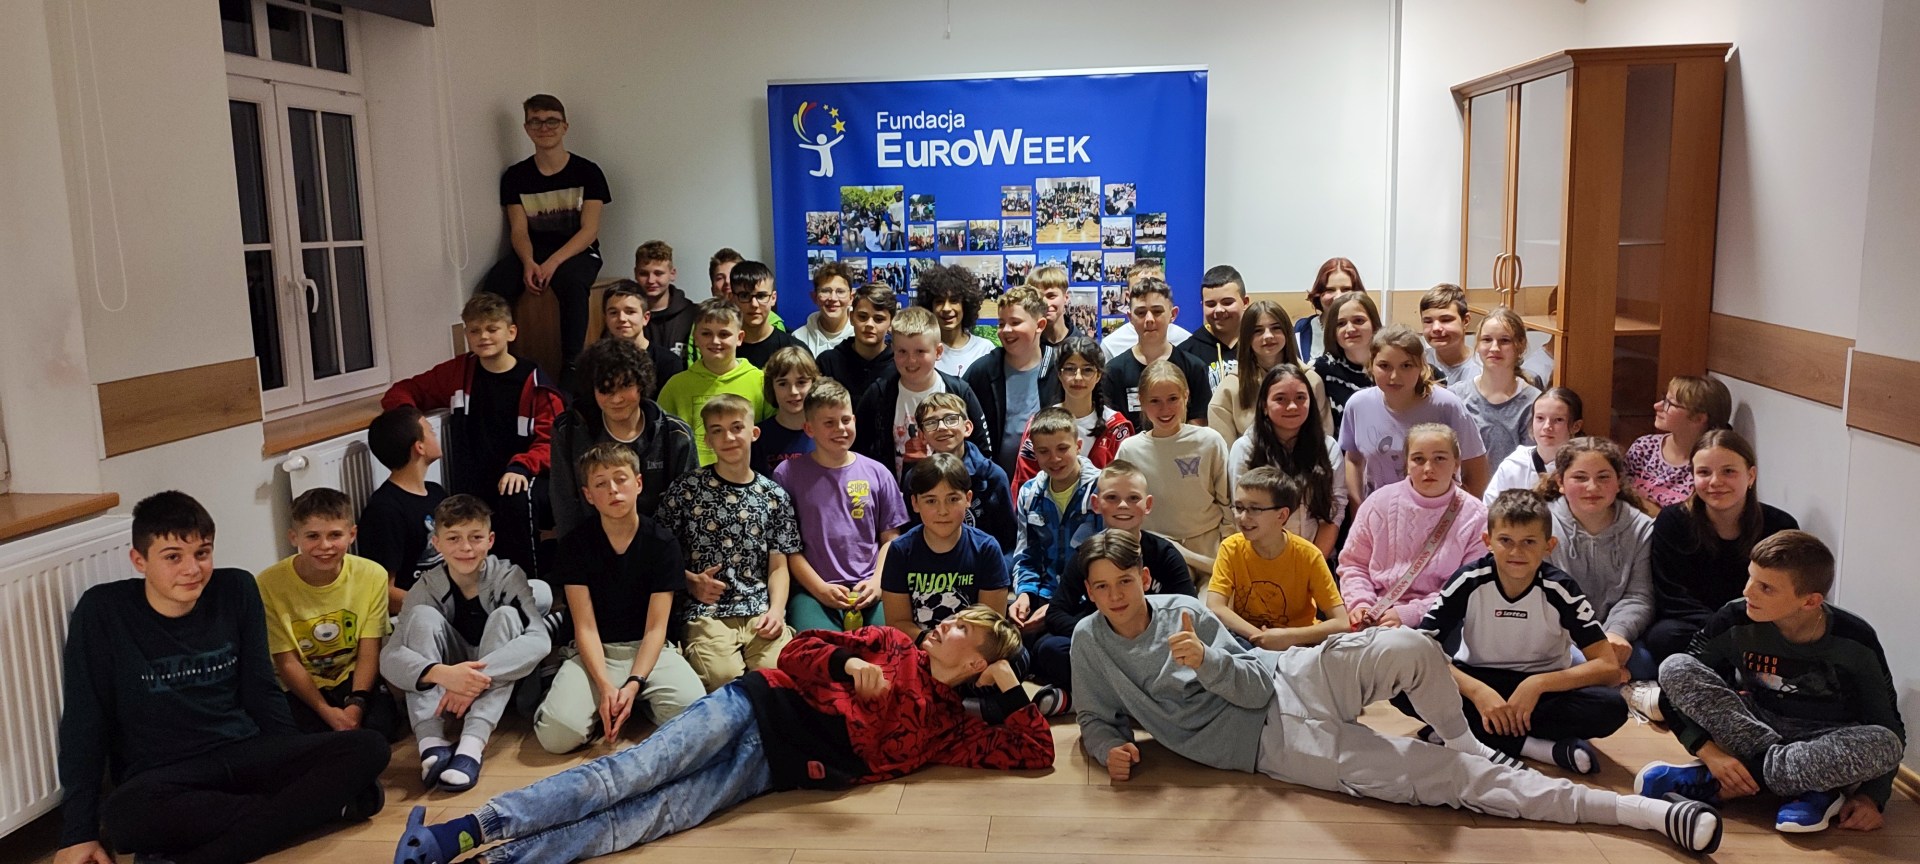 Grupowe zdjęcie wszystkich uczestników projektu na tle plakatu EuroWeek.